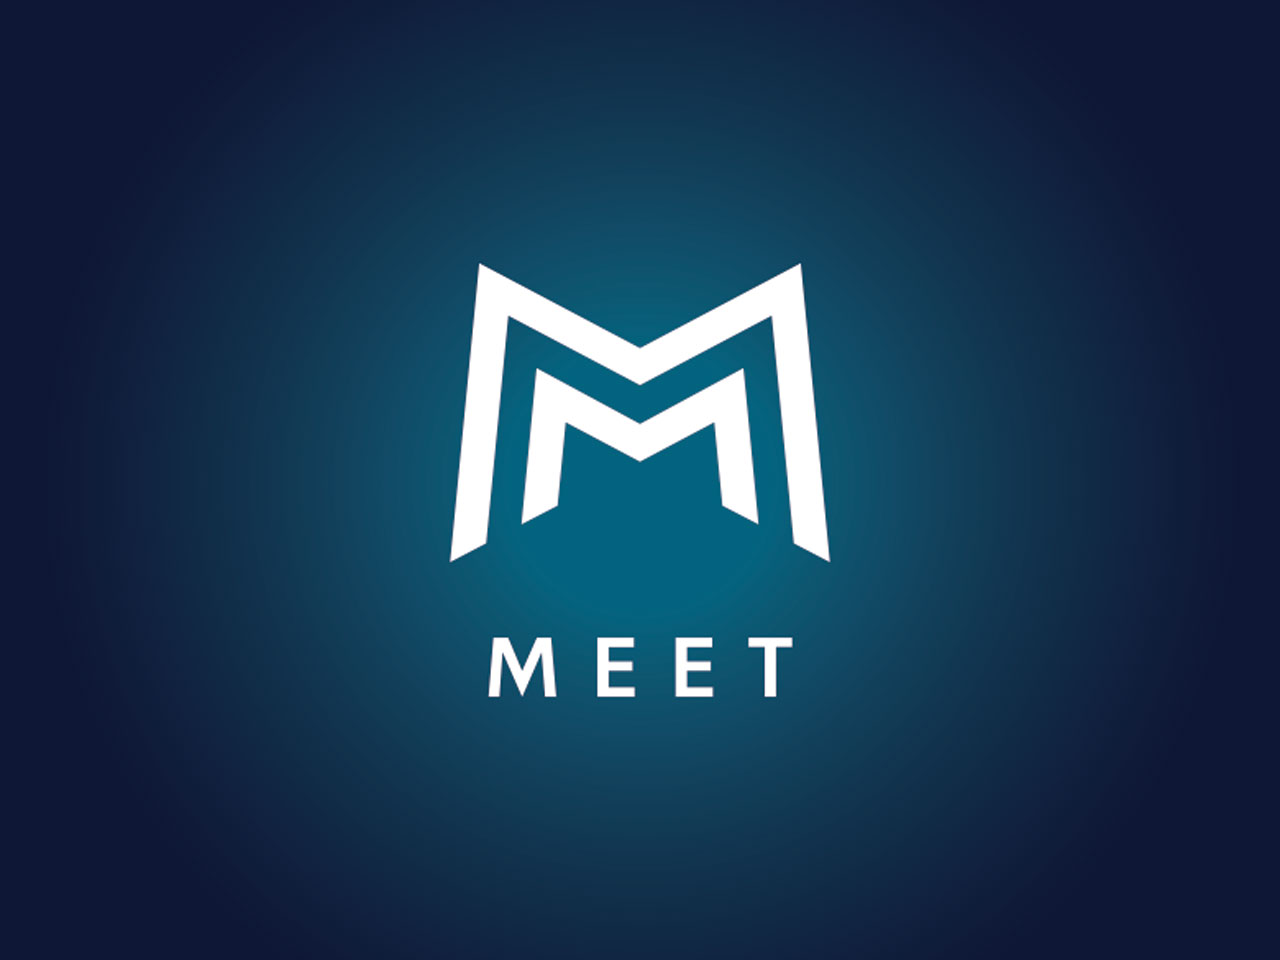 2022年6月にサービス開始した、次世代コミュニケーションソリューション『MEET』は、NFC技術を活用したサービス。